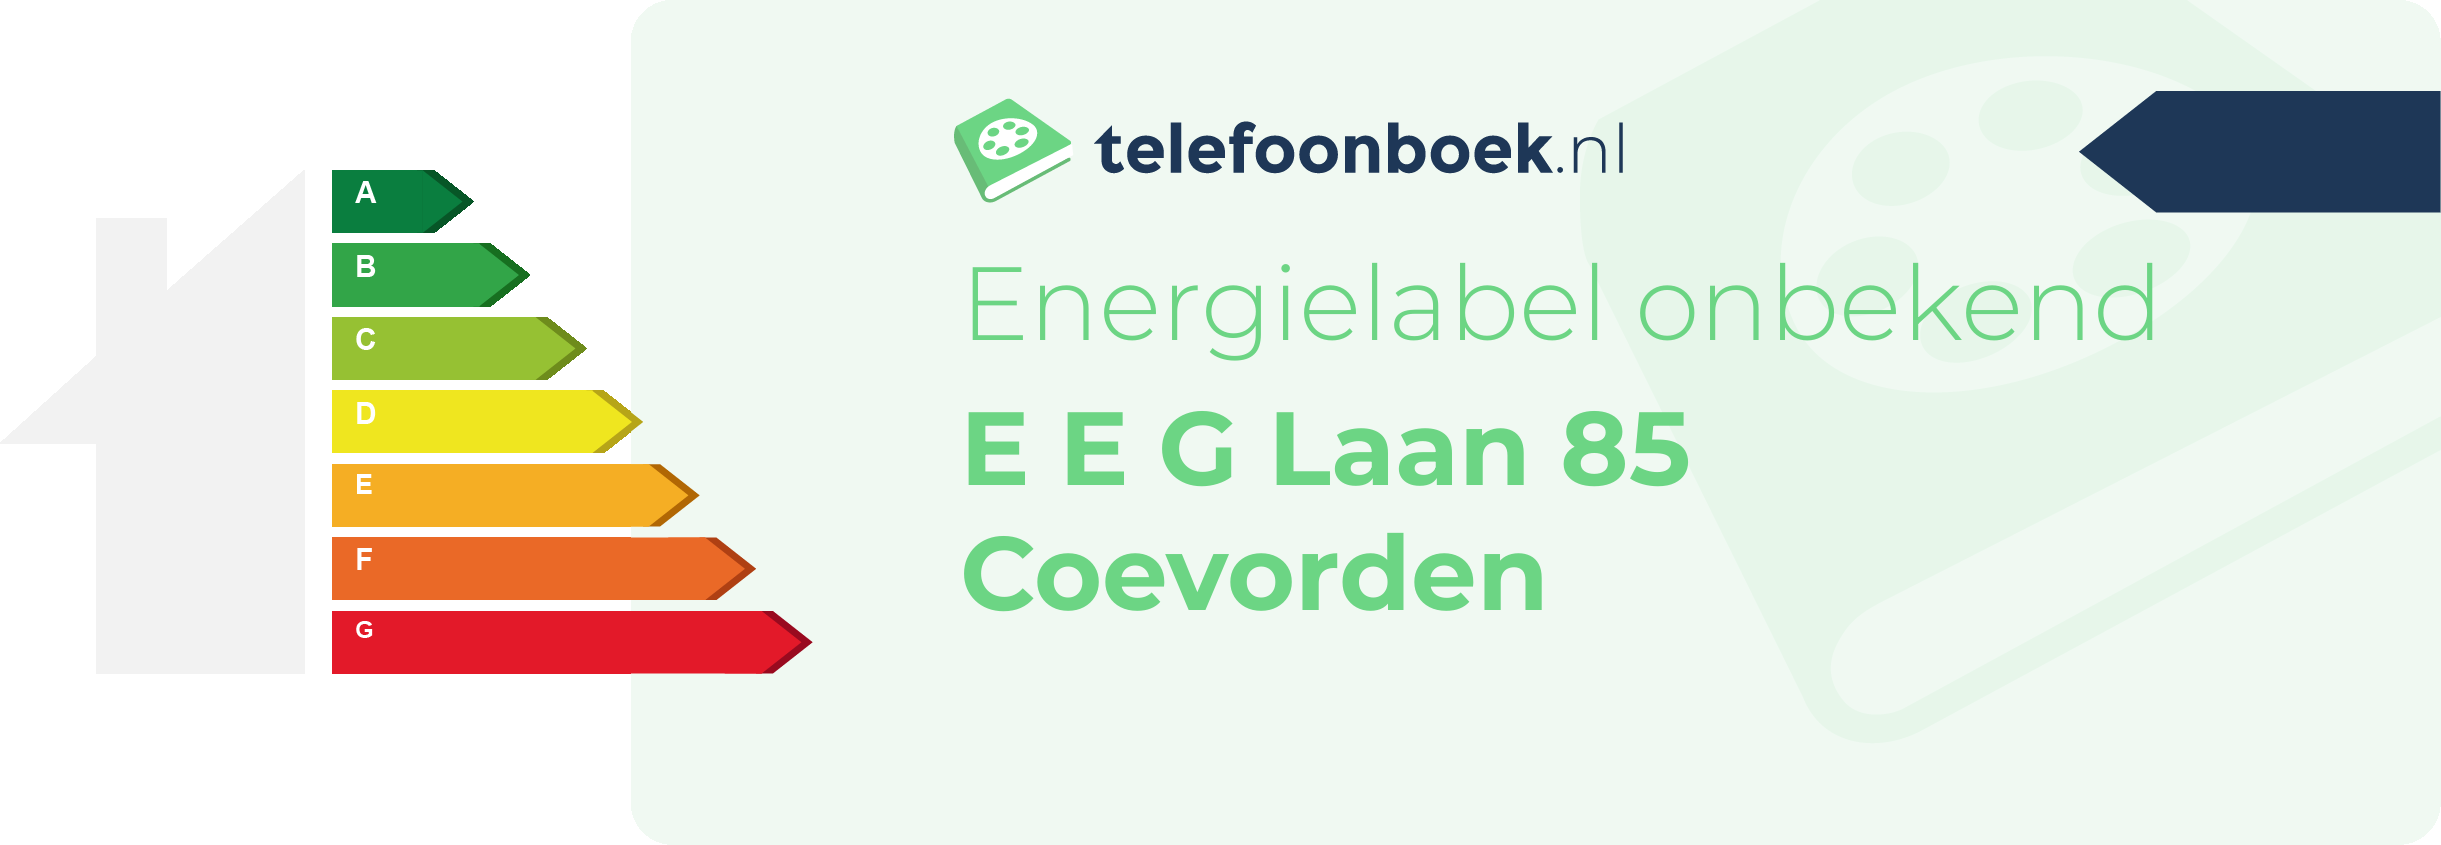 Energielabel E E G Laan 85 Coevorden